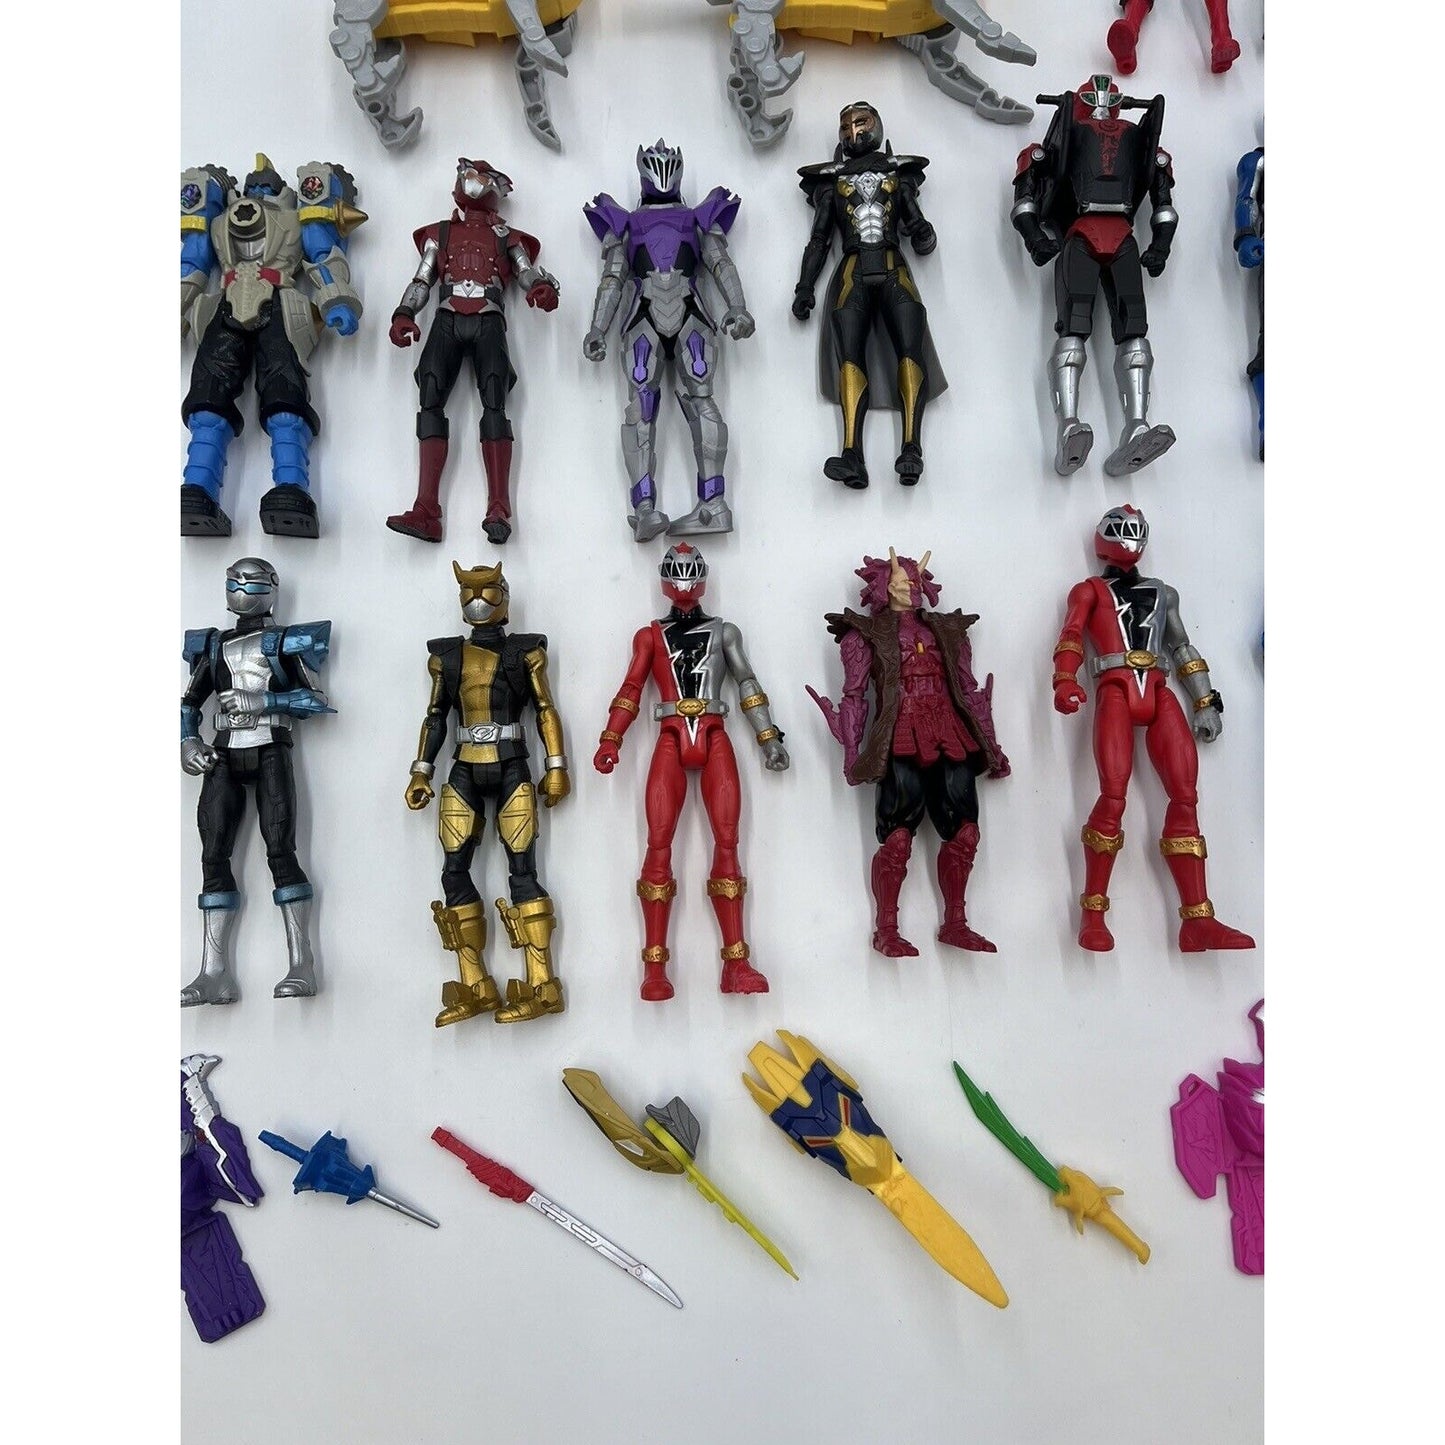 Power Rangers Samurai & Mix/More Action Figure Lot W/ Accessories